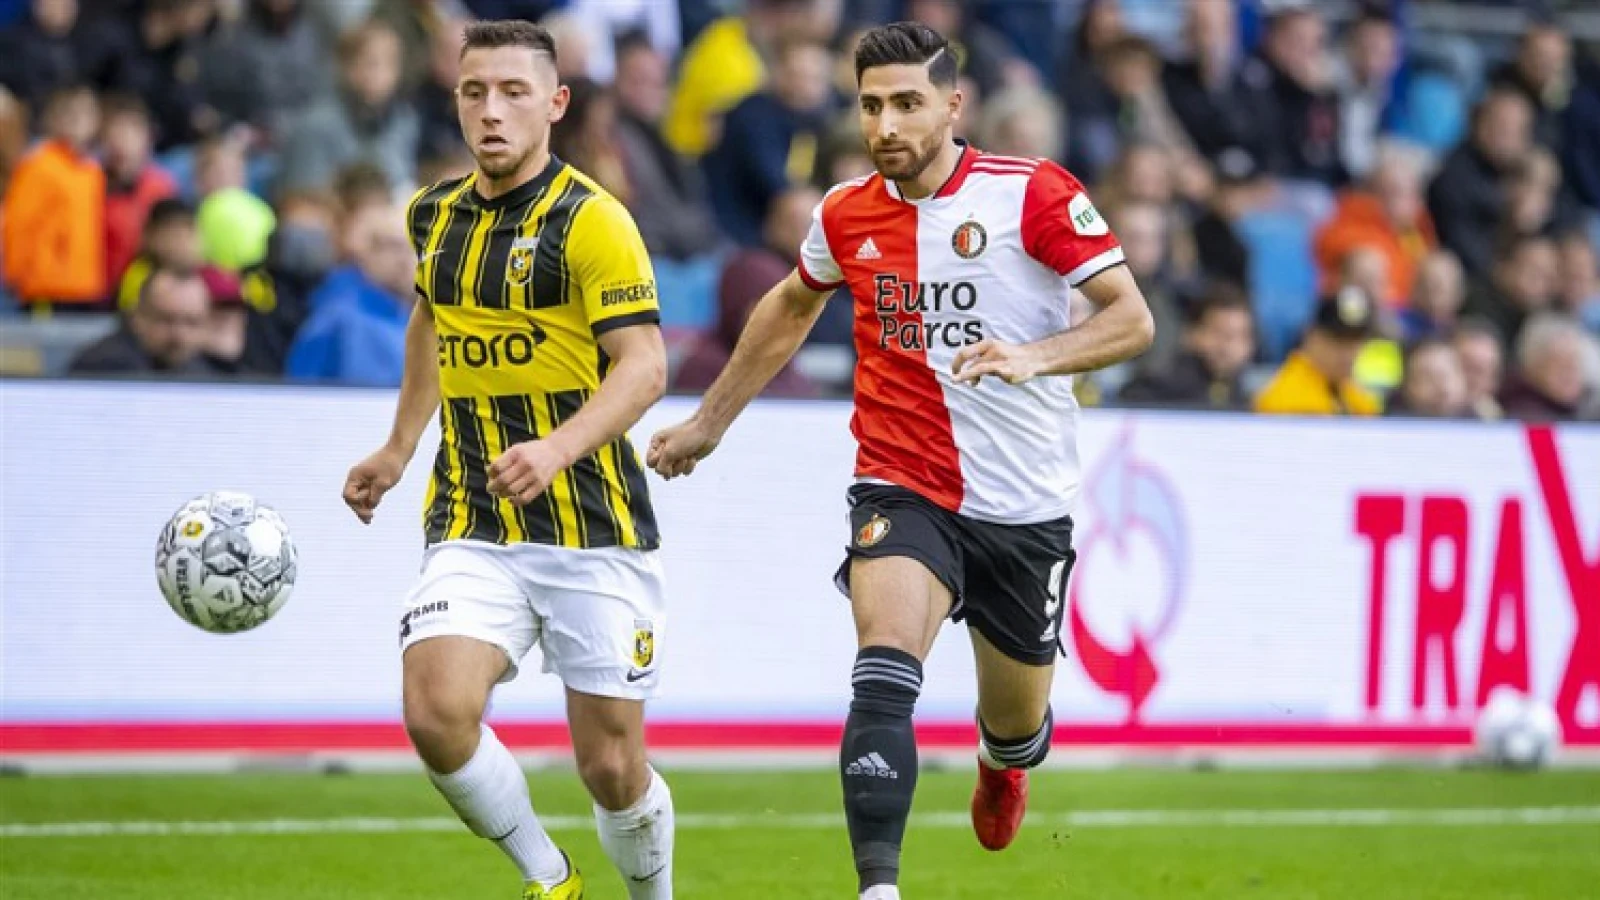 SAMENVATTING | Vitesse - Feyenoord 2-1